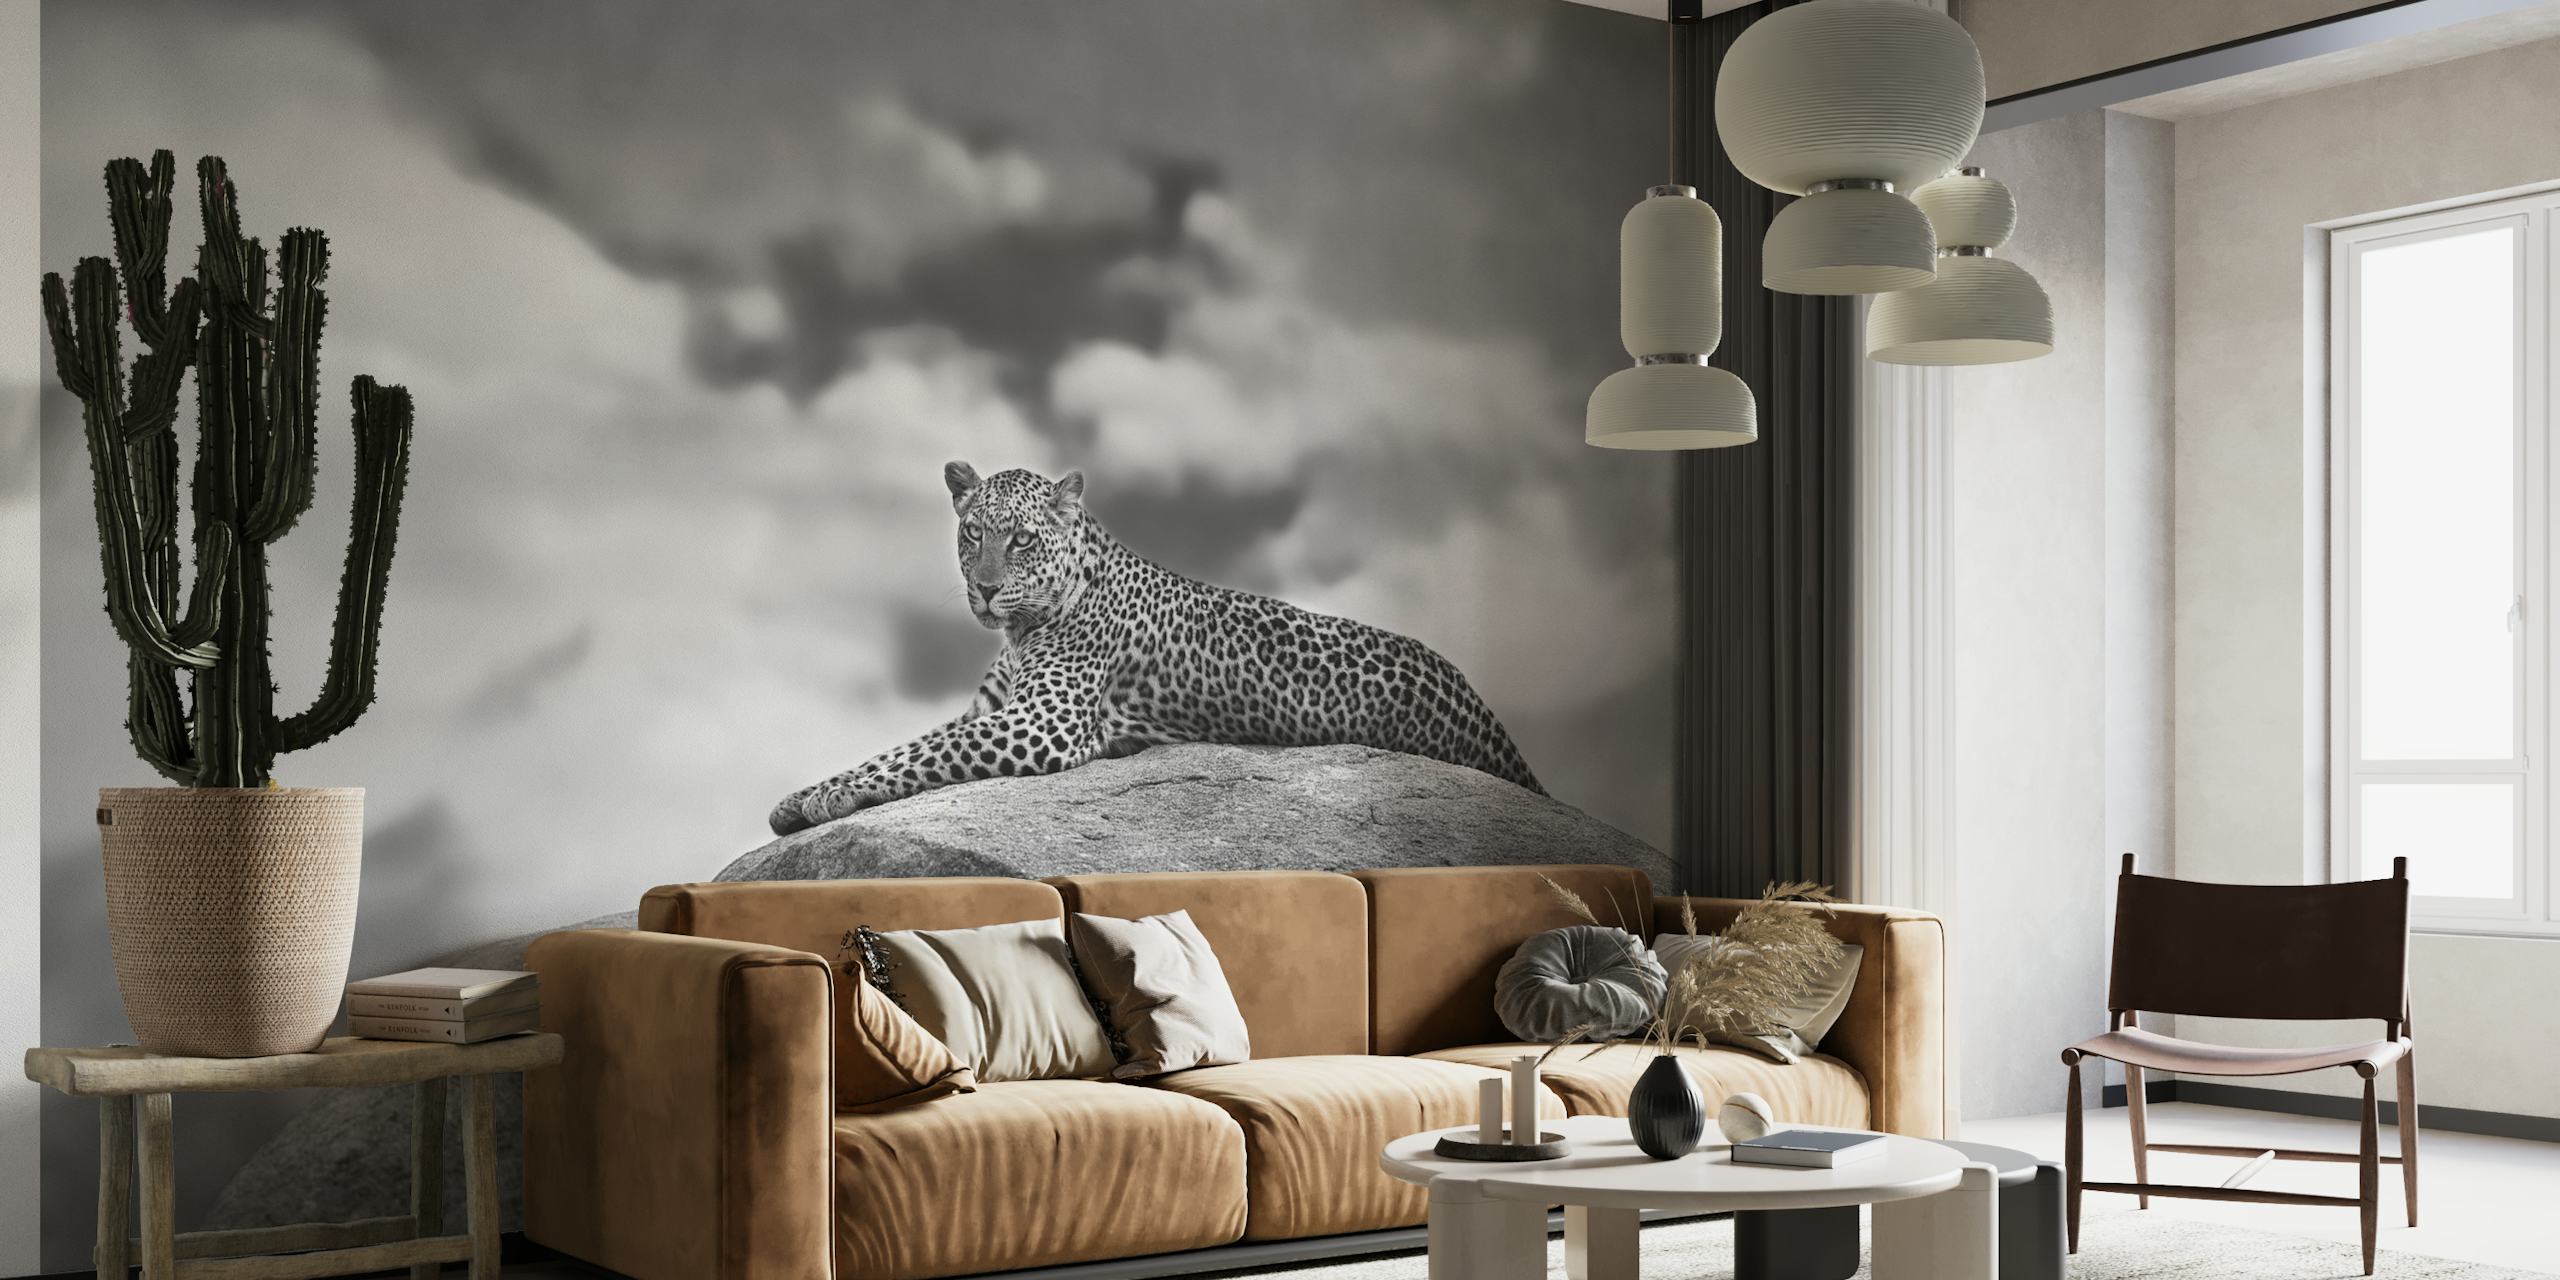 Leopard on a Kopje behang